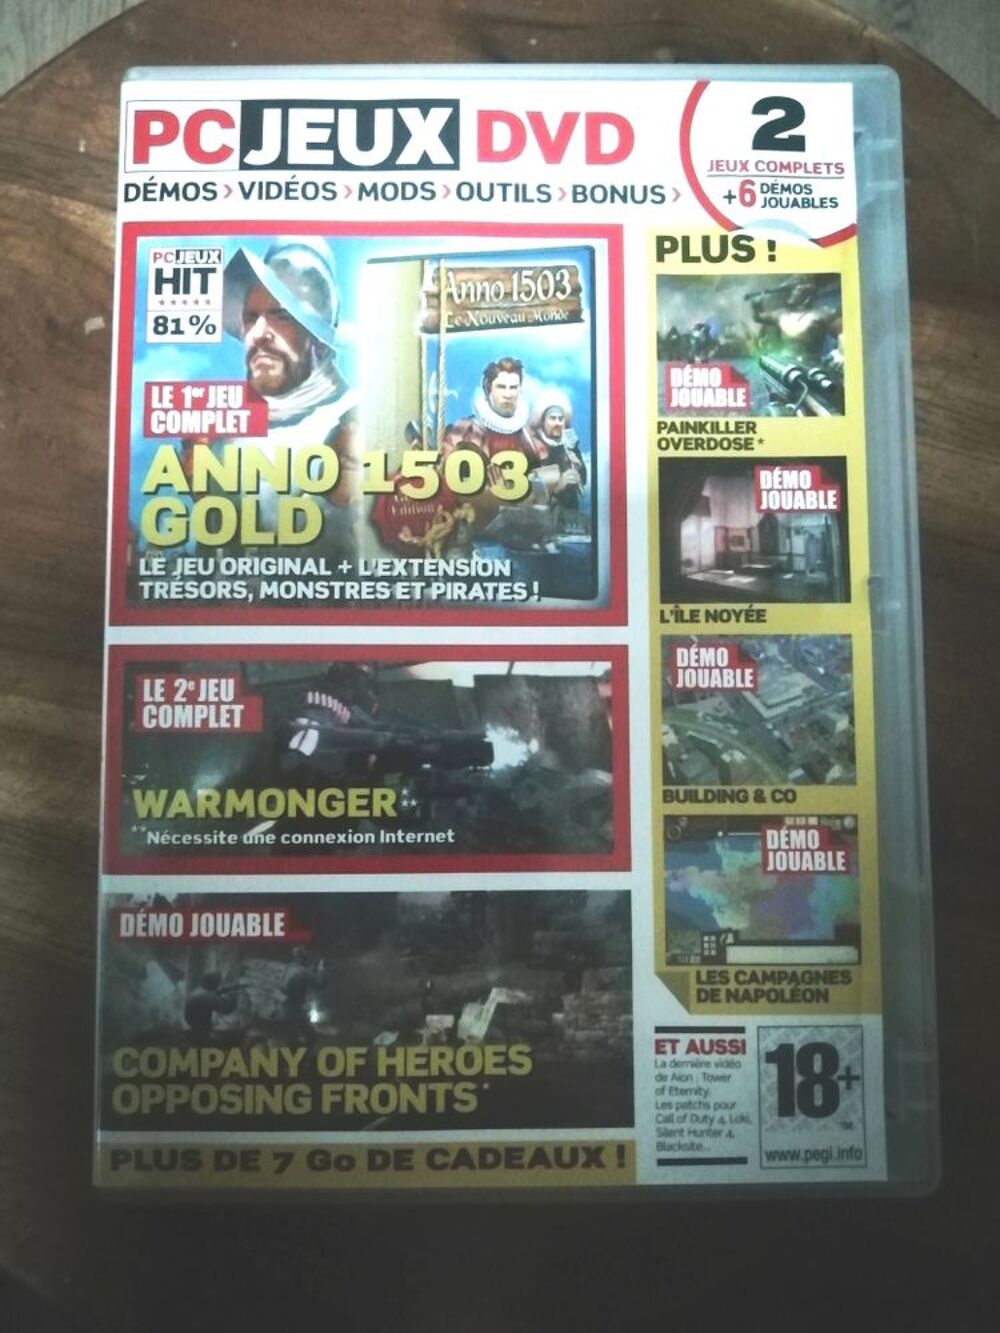 Pc Jeux Dvd 2 Jeux Complets (Anno 1503 GOLD et Warmonger) 6 D&eacute;mos Jouables Consoles et jeux vidos